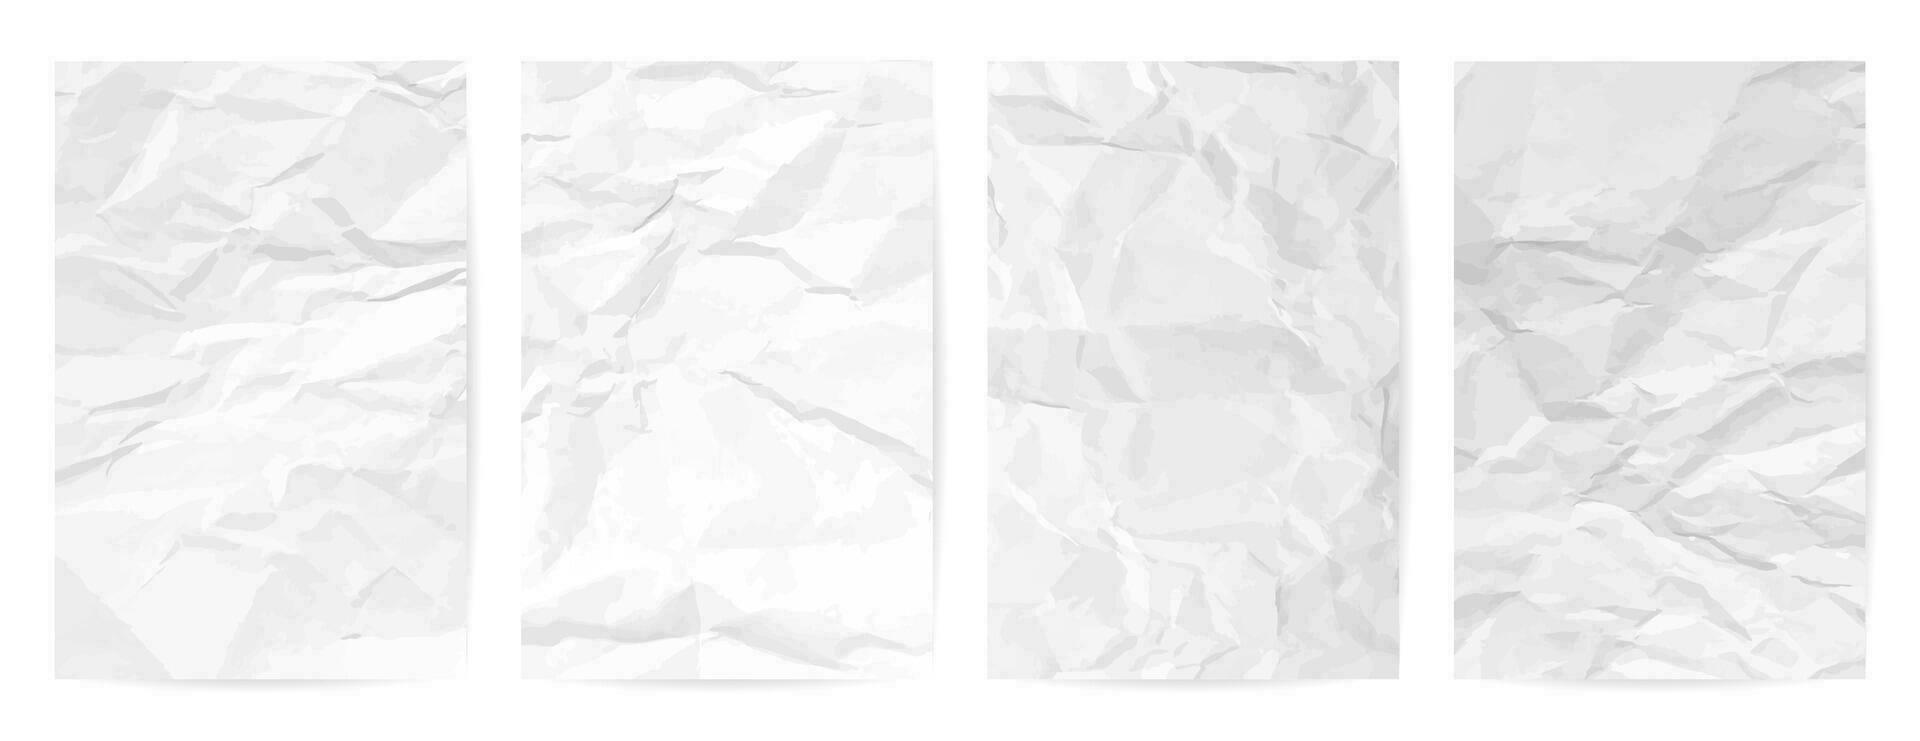 wit schoon verfrommeld papier achtergrond. reeks van vier verticaal verfrommeld leeg papier Sjablonen voor posters en spandoeken. vector illustratie